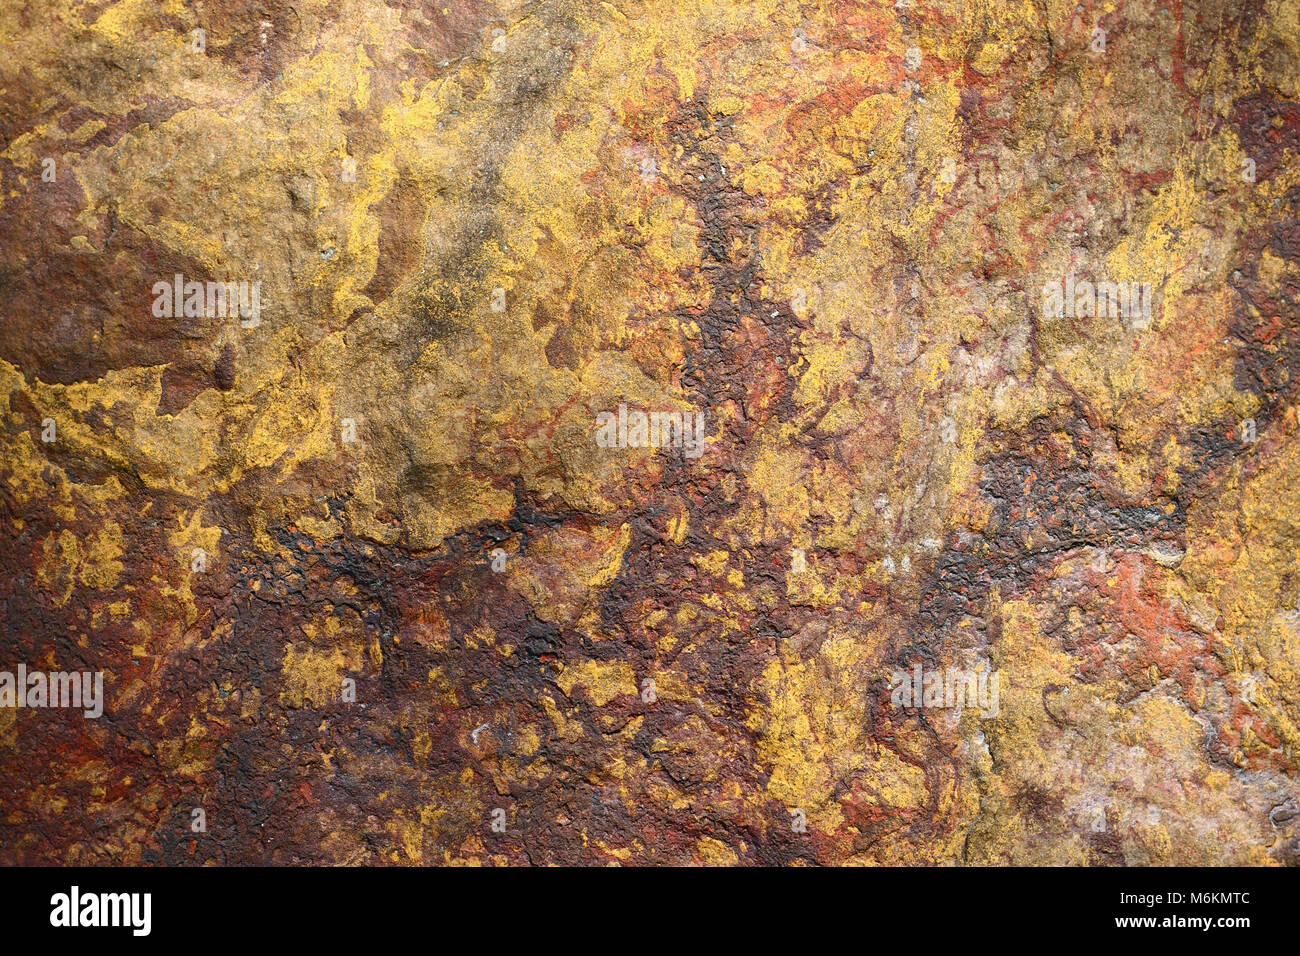 Dettaglio della superficie del rock - texture - aposandstone Foto Stock